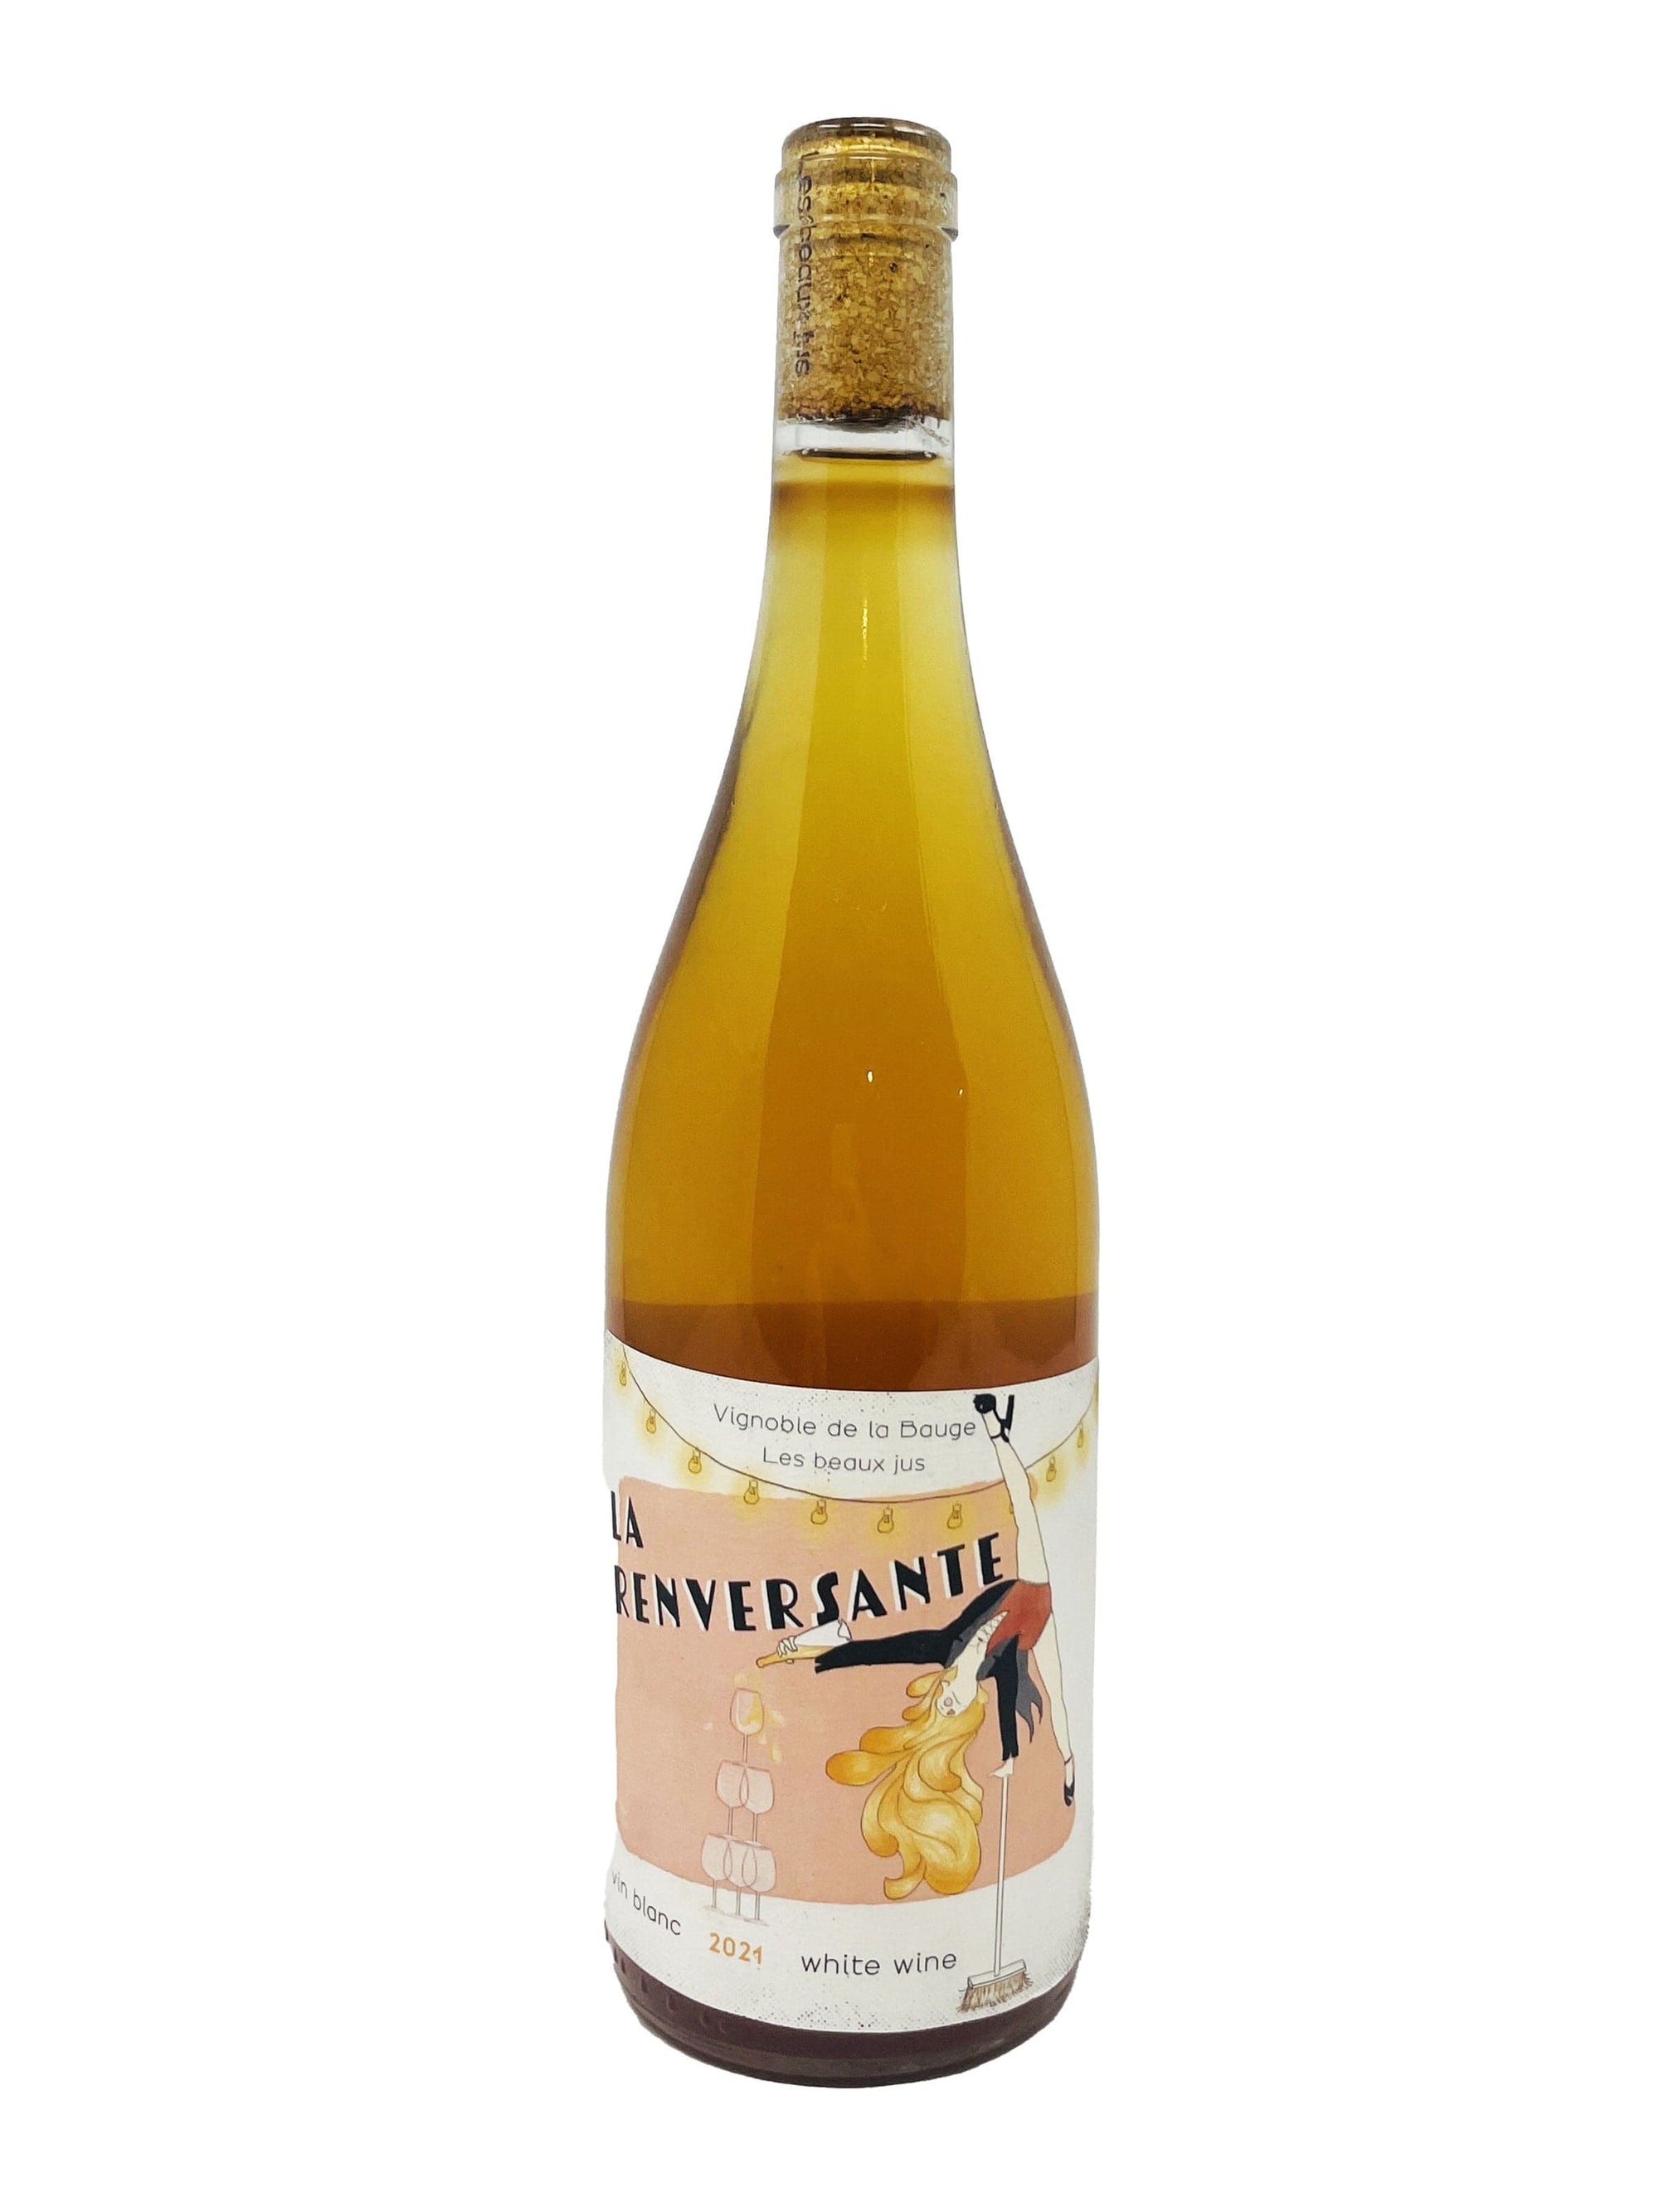 Vignoble de La Bauge vin La Renversante - Vin orange du Vignoble La Bauge